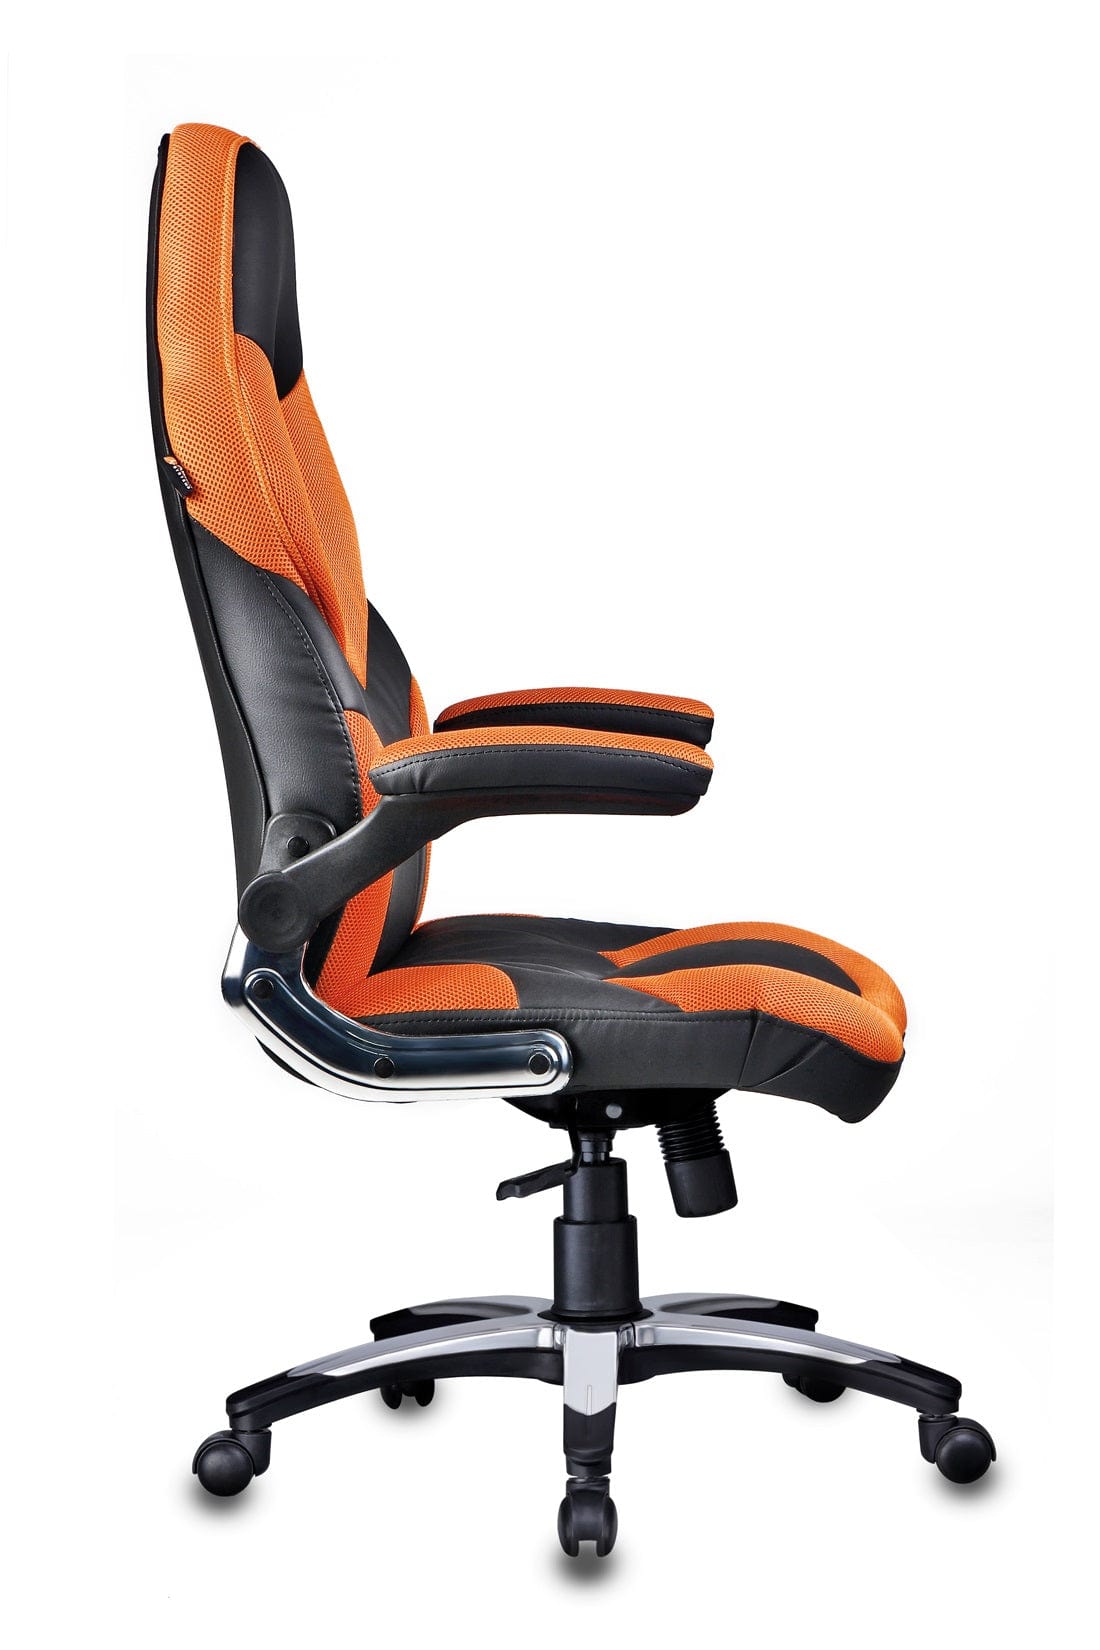 Stylish Designer chair in Black / Orange